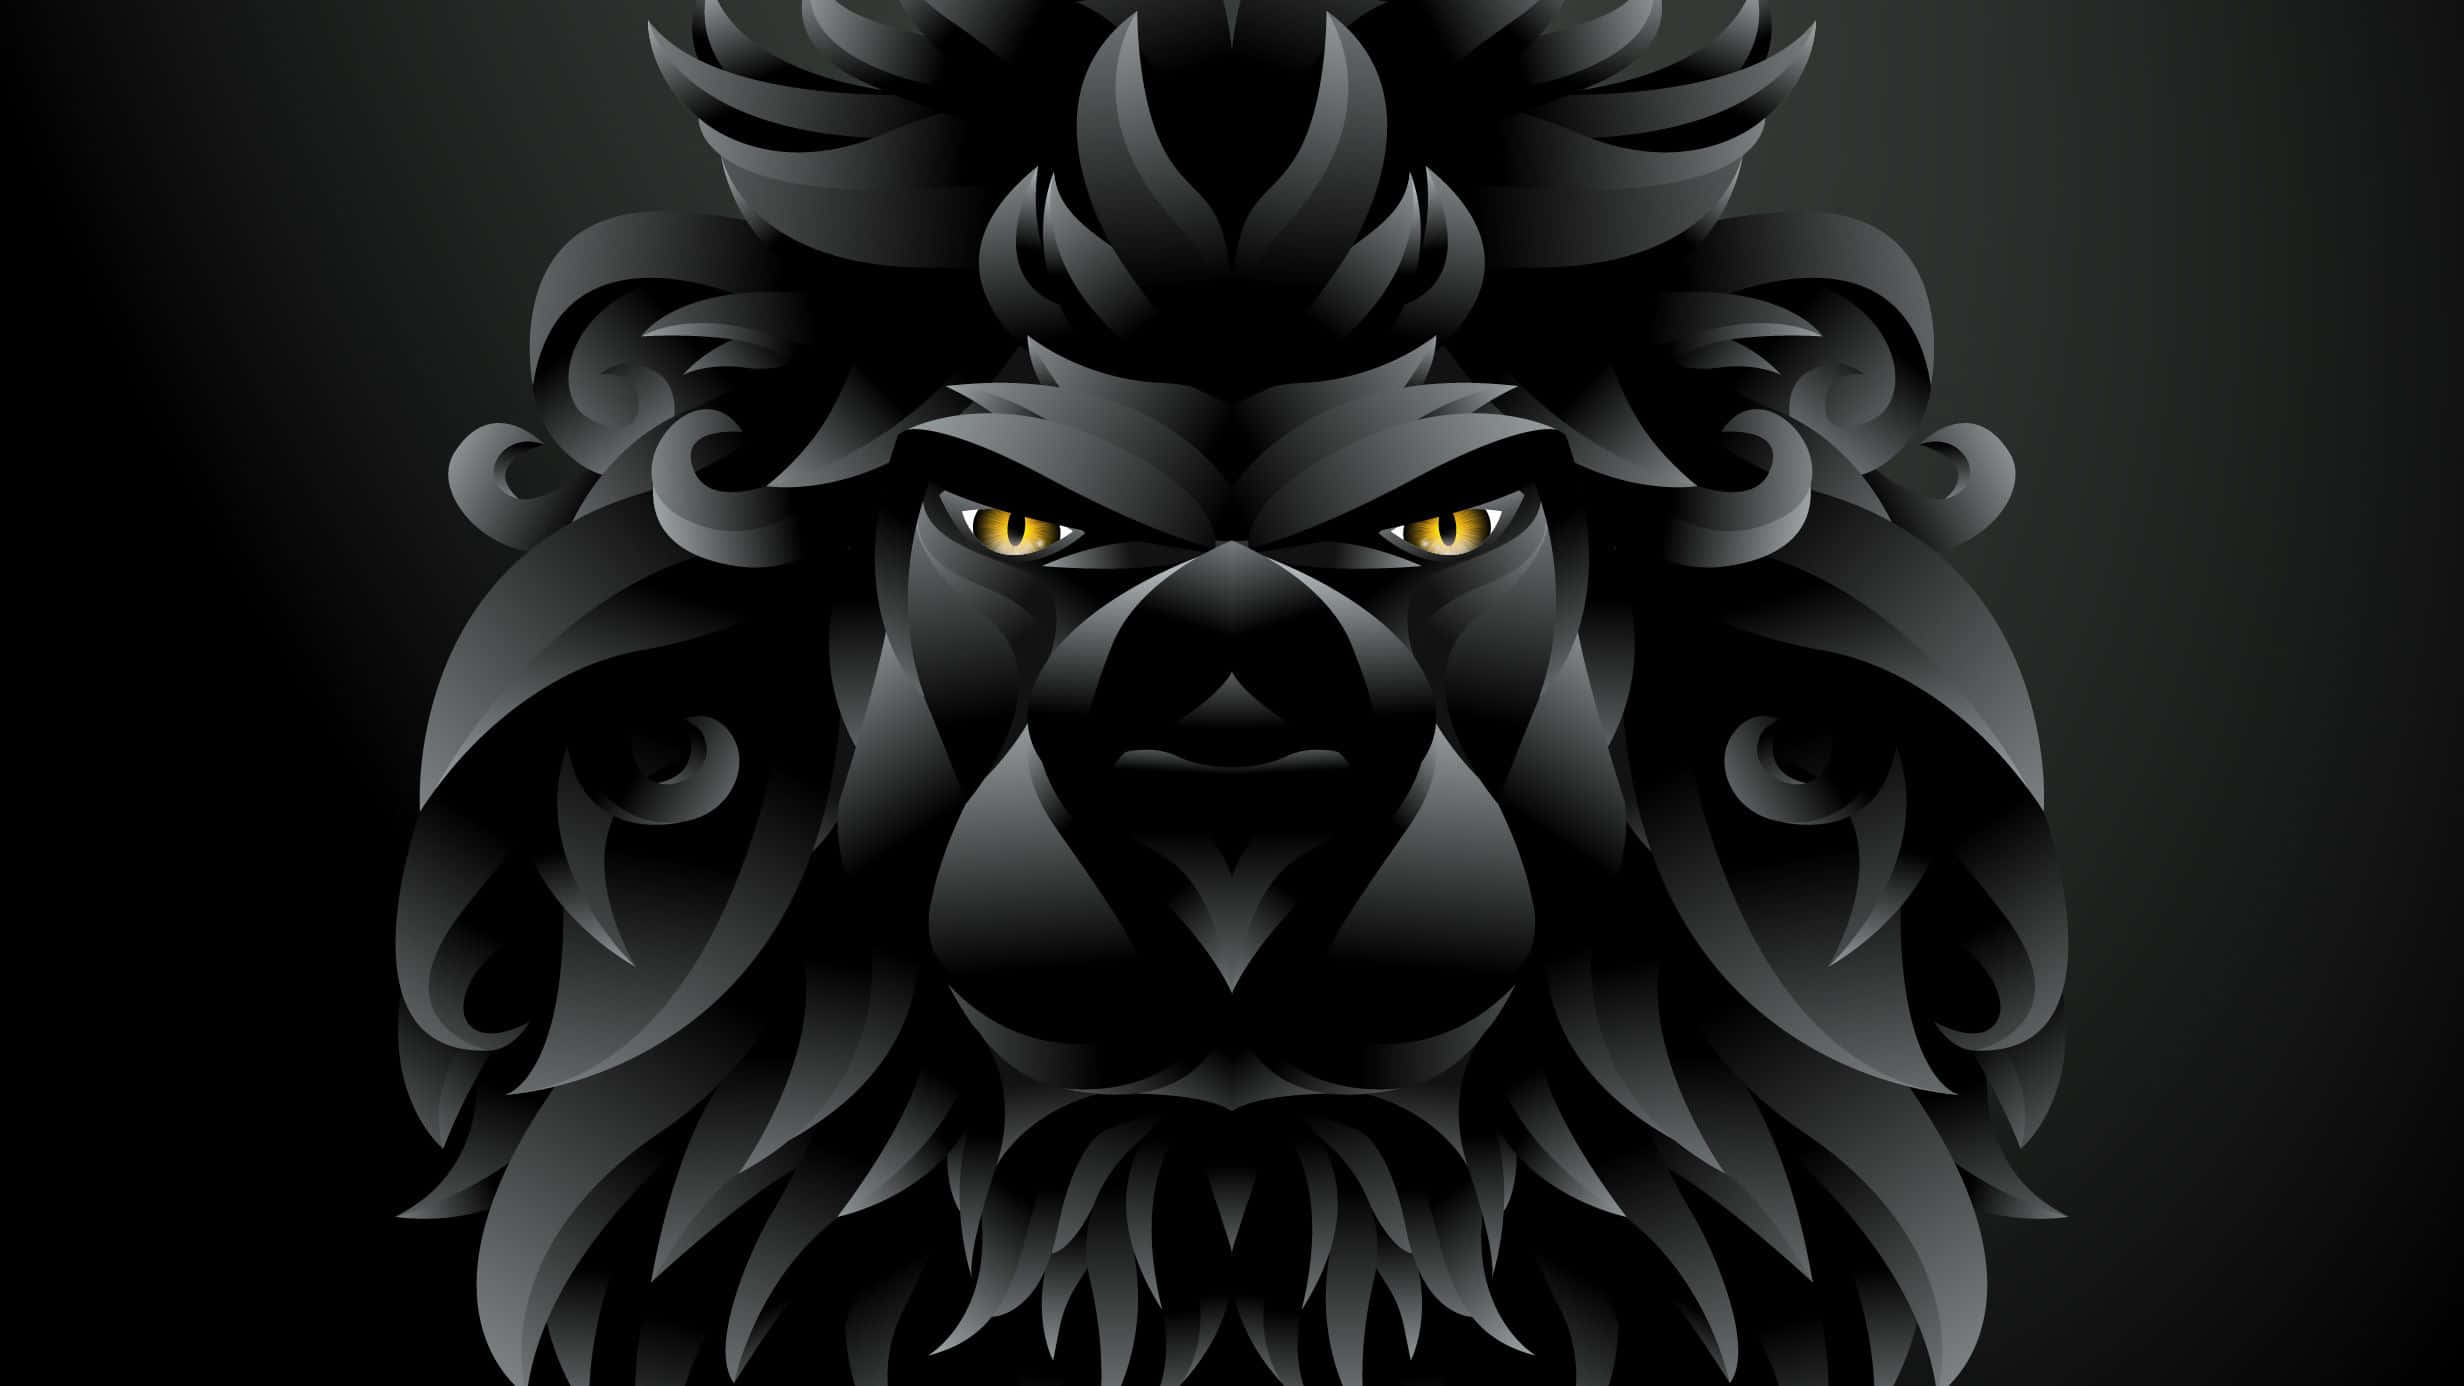 black male lion wallpaper